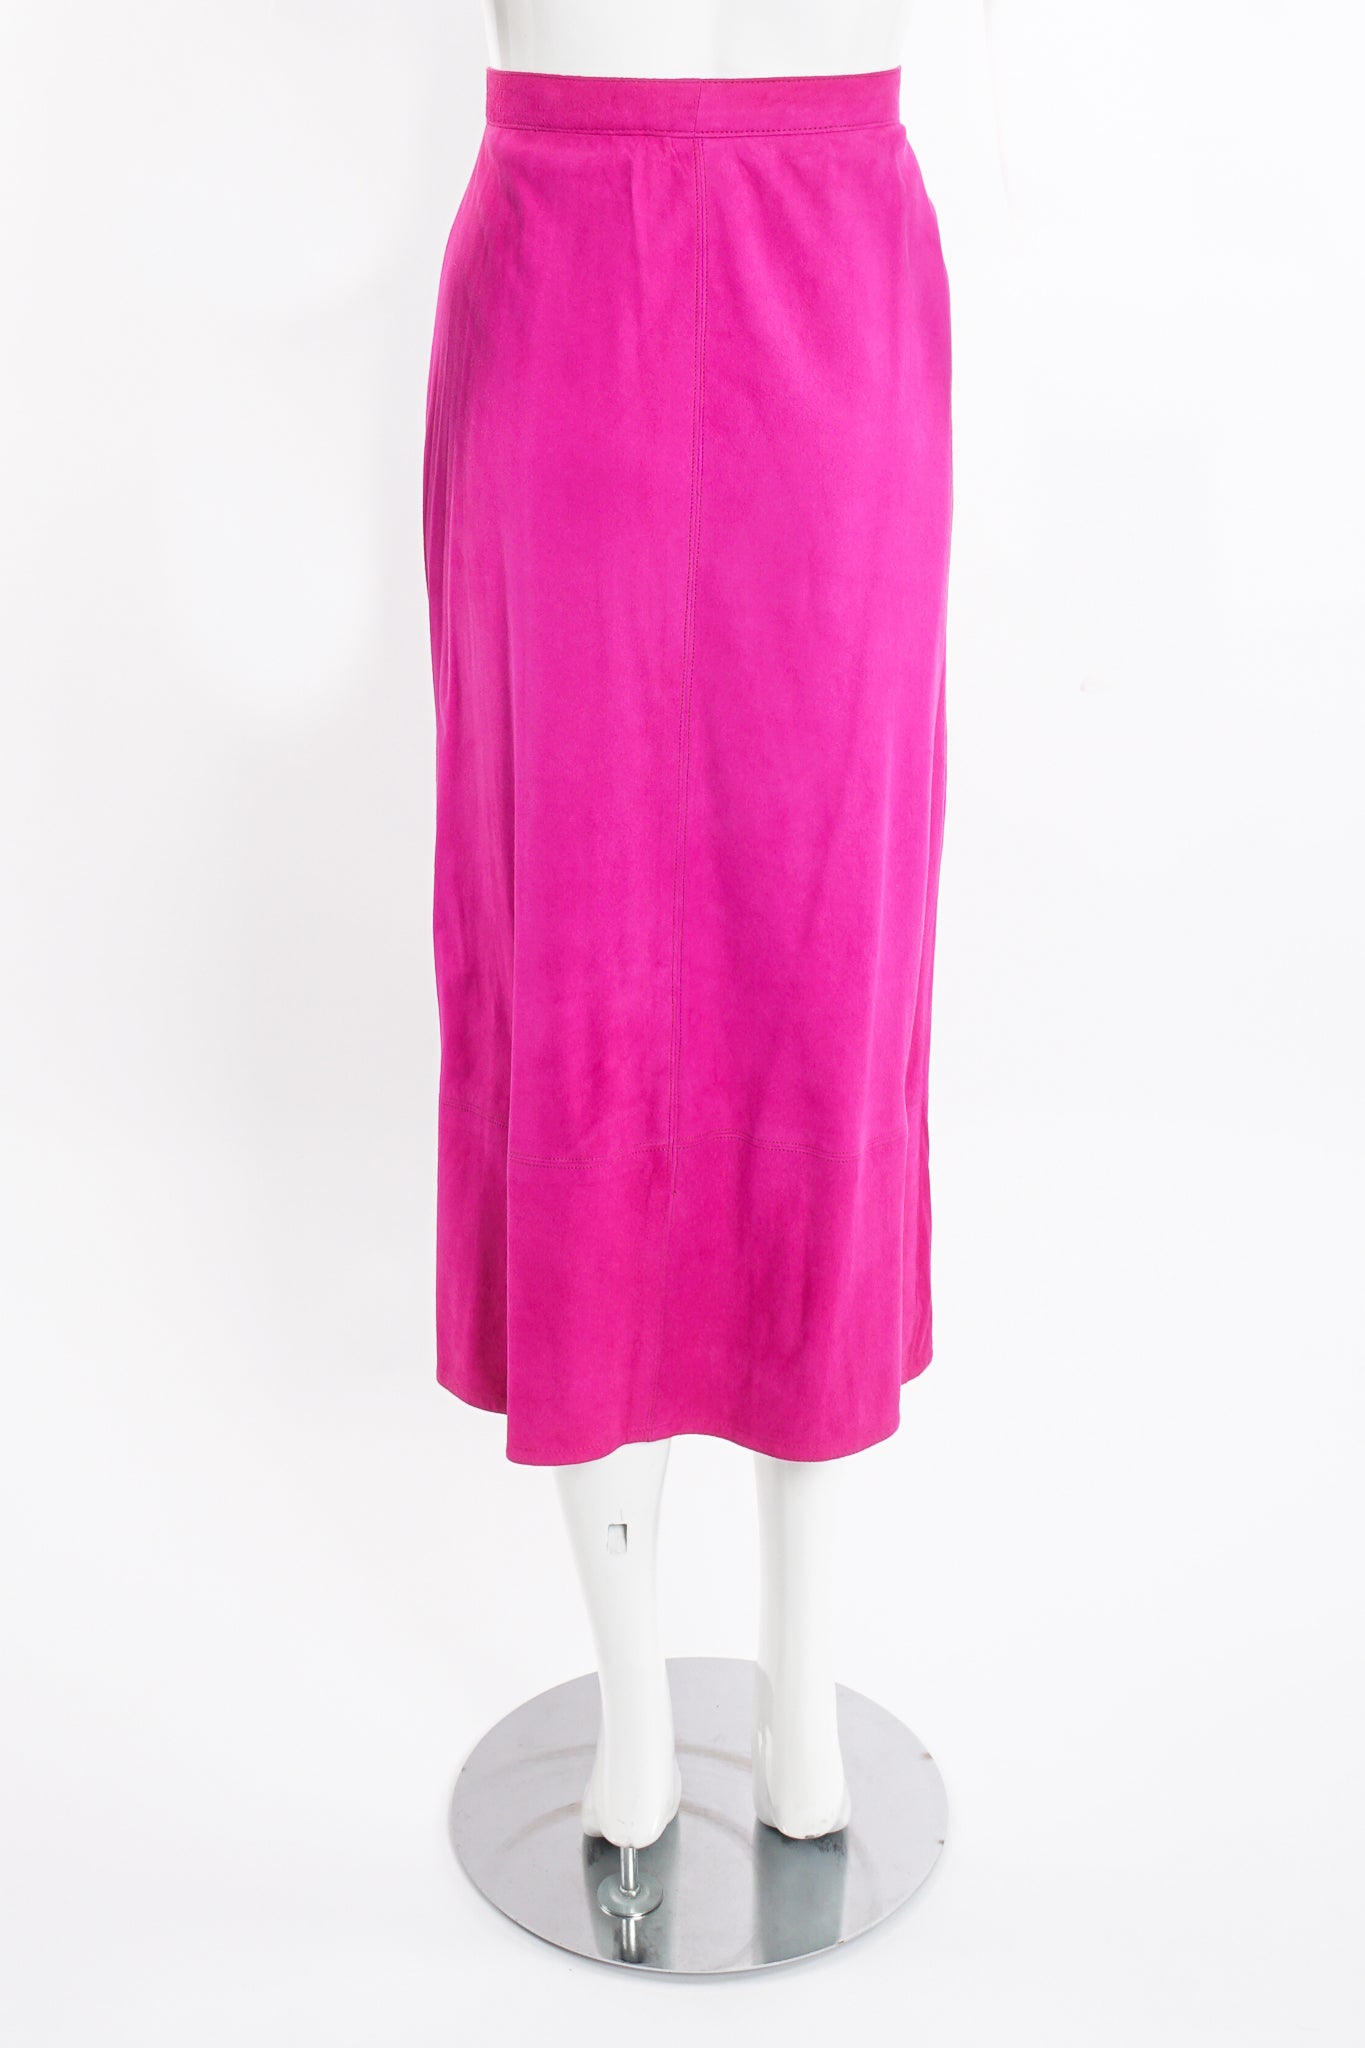 Vintage Kasper for JL Sport Hot Pink Tissue Suede Wrap Skirt on Mannequin back at Recess LA